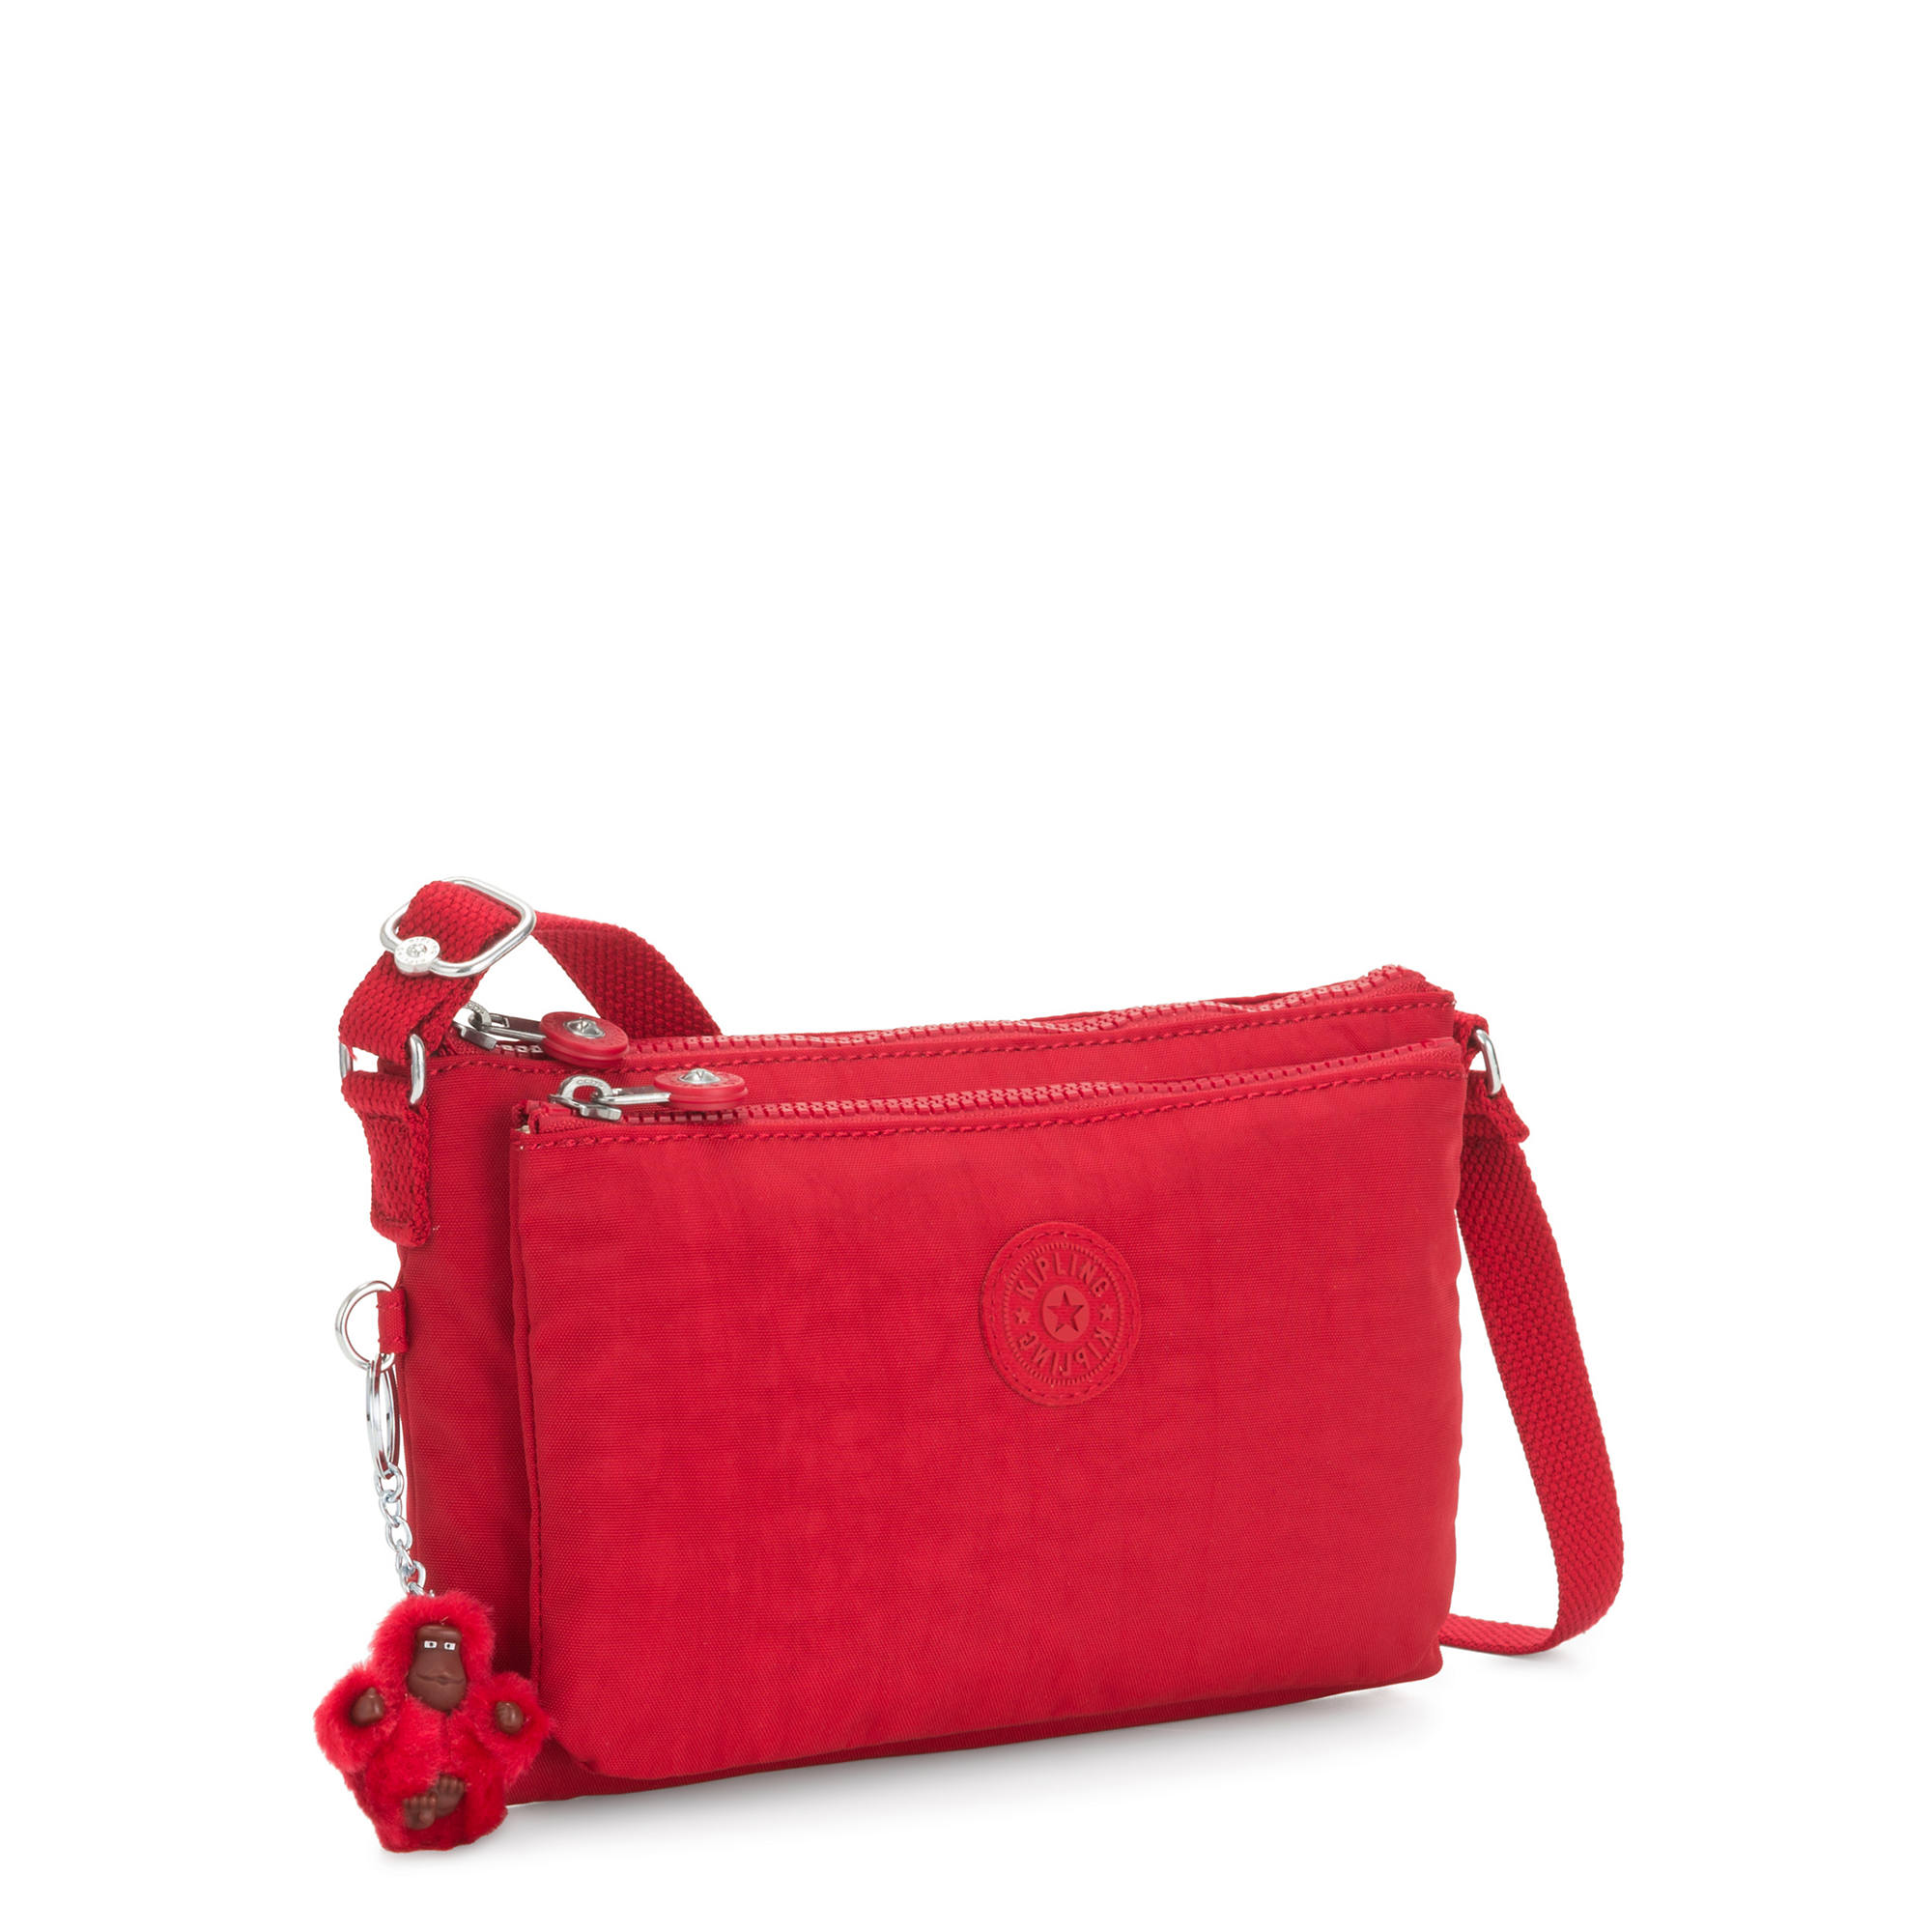 Inkmilan Red Rivet Box Crossbody Bag for Women: Buy Inkmilan Red